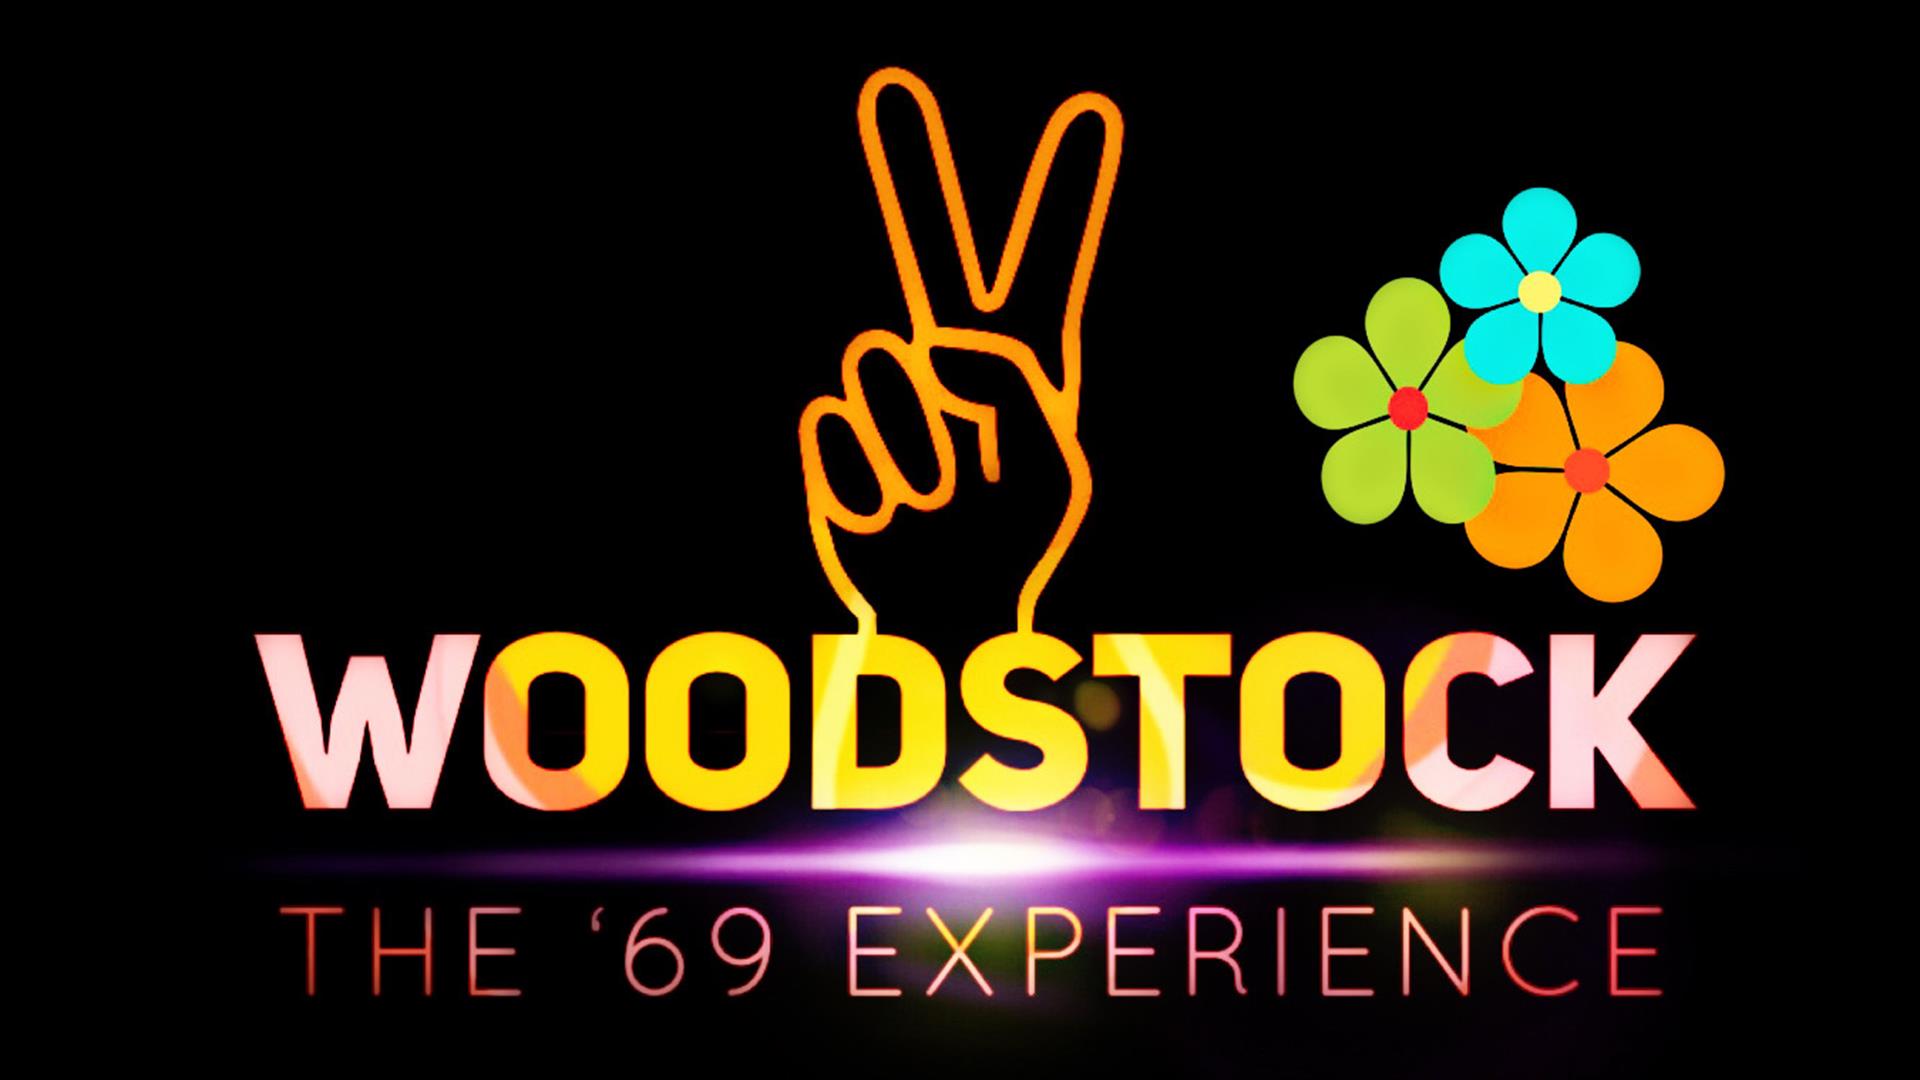 WOODSTOCK - en hyllest til artistene, musikken, følelsen og stemningen fra 
Woodstockfestivalen i 1969